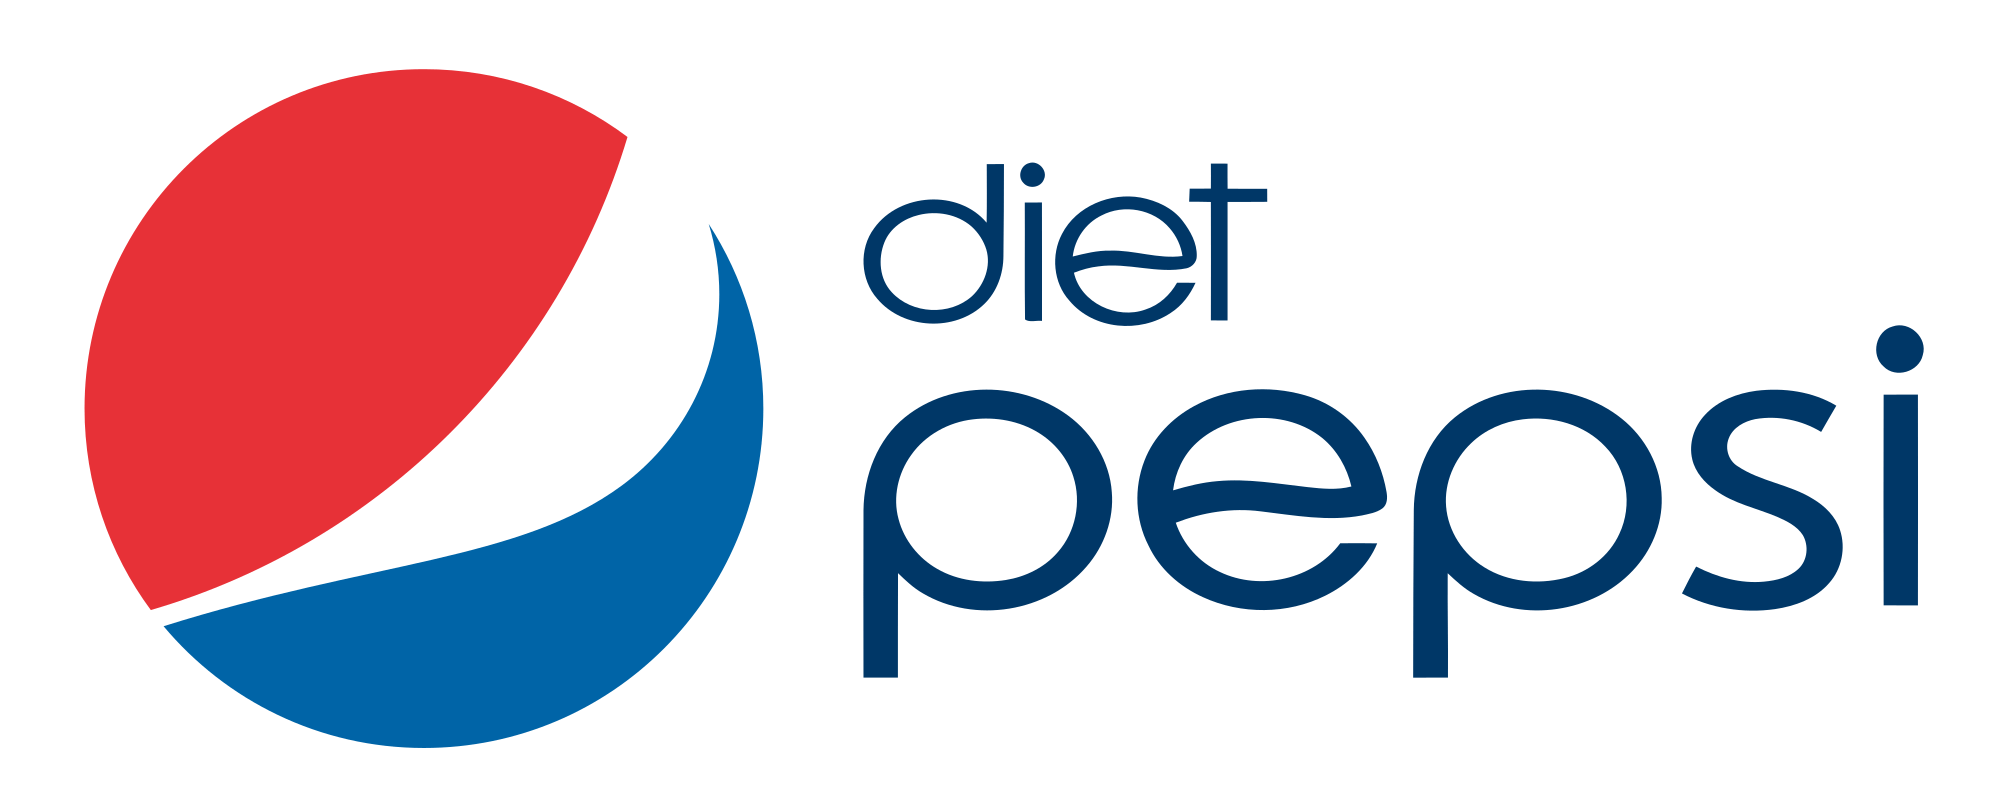 Diet Pepsi Logo - Diet Pepsi Logo.svg